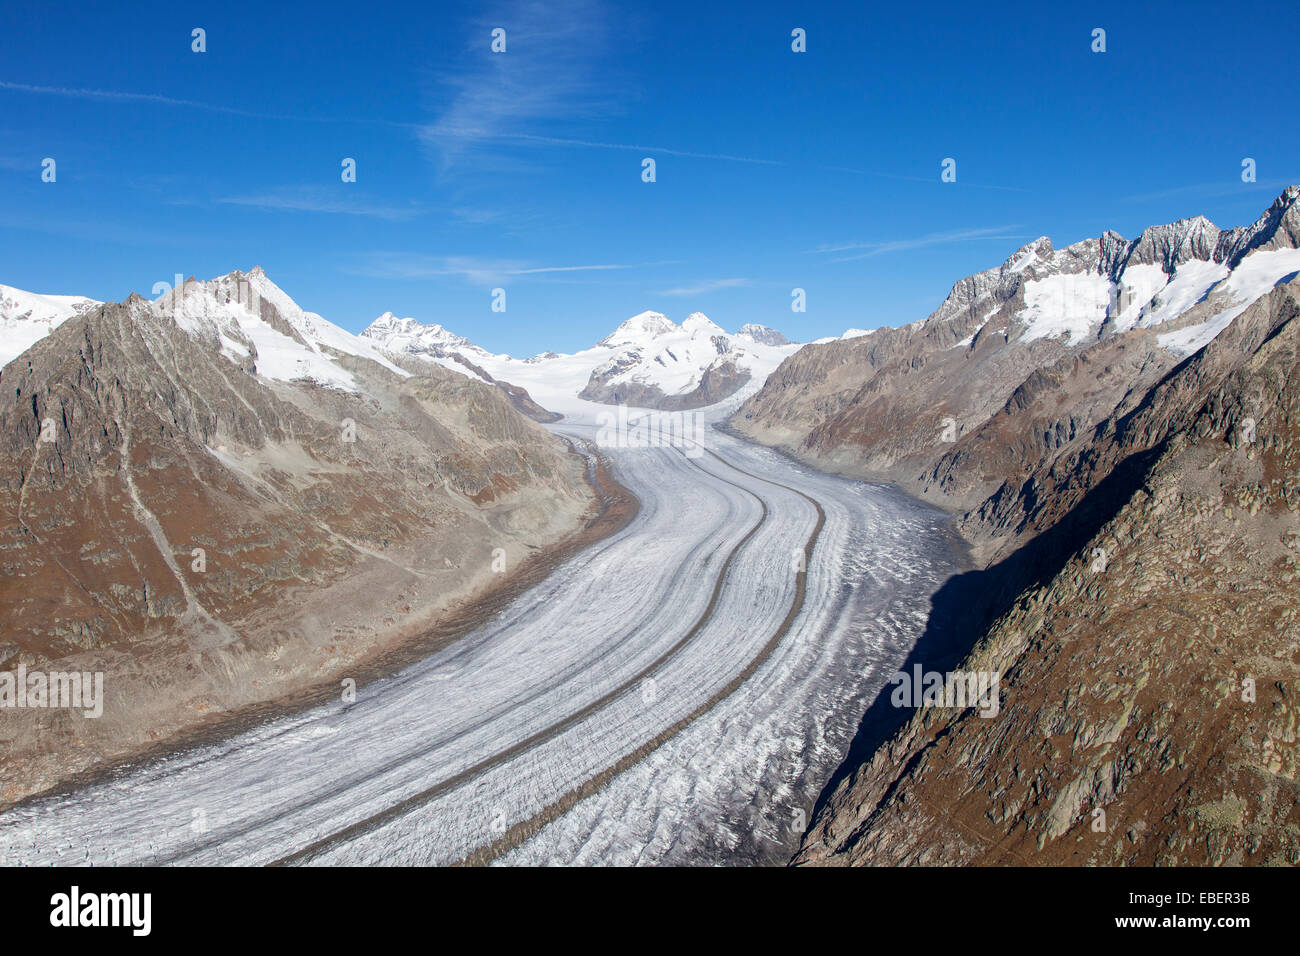 Aletsch Glacier, Switzerland Stock Photo